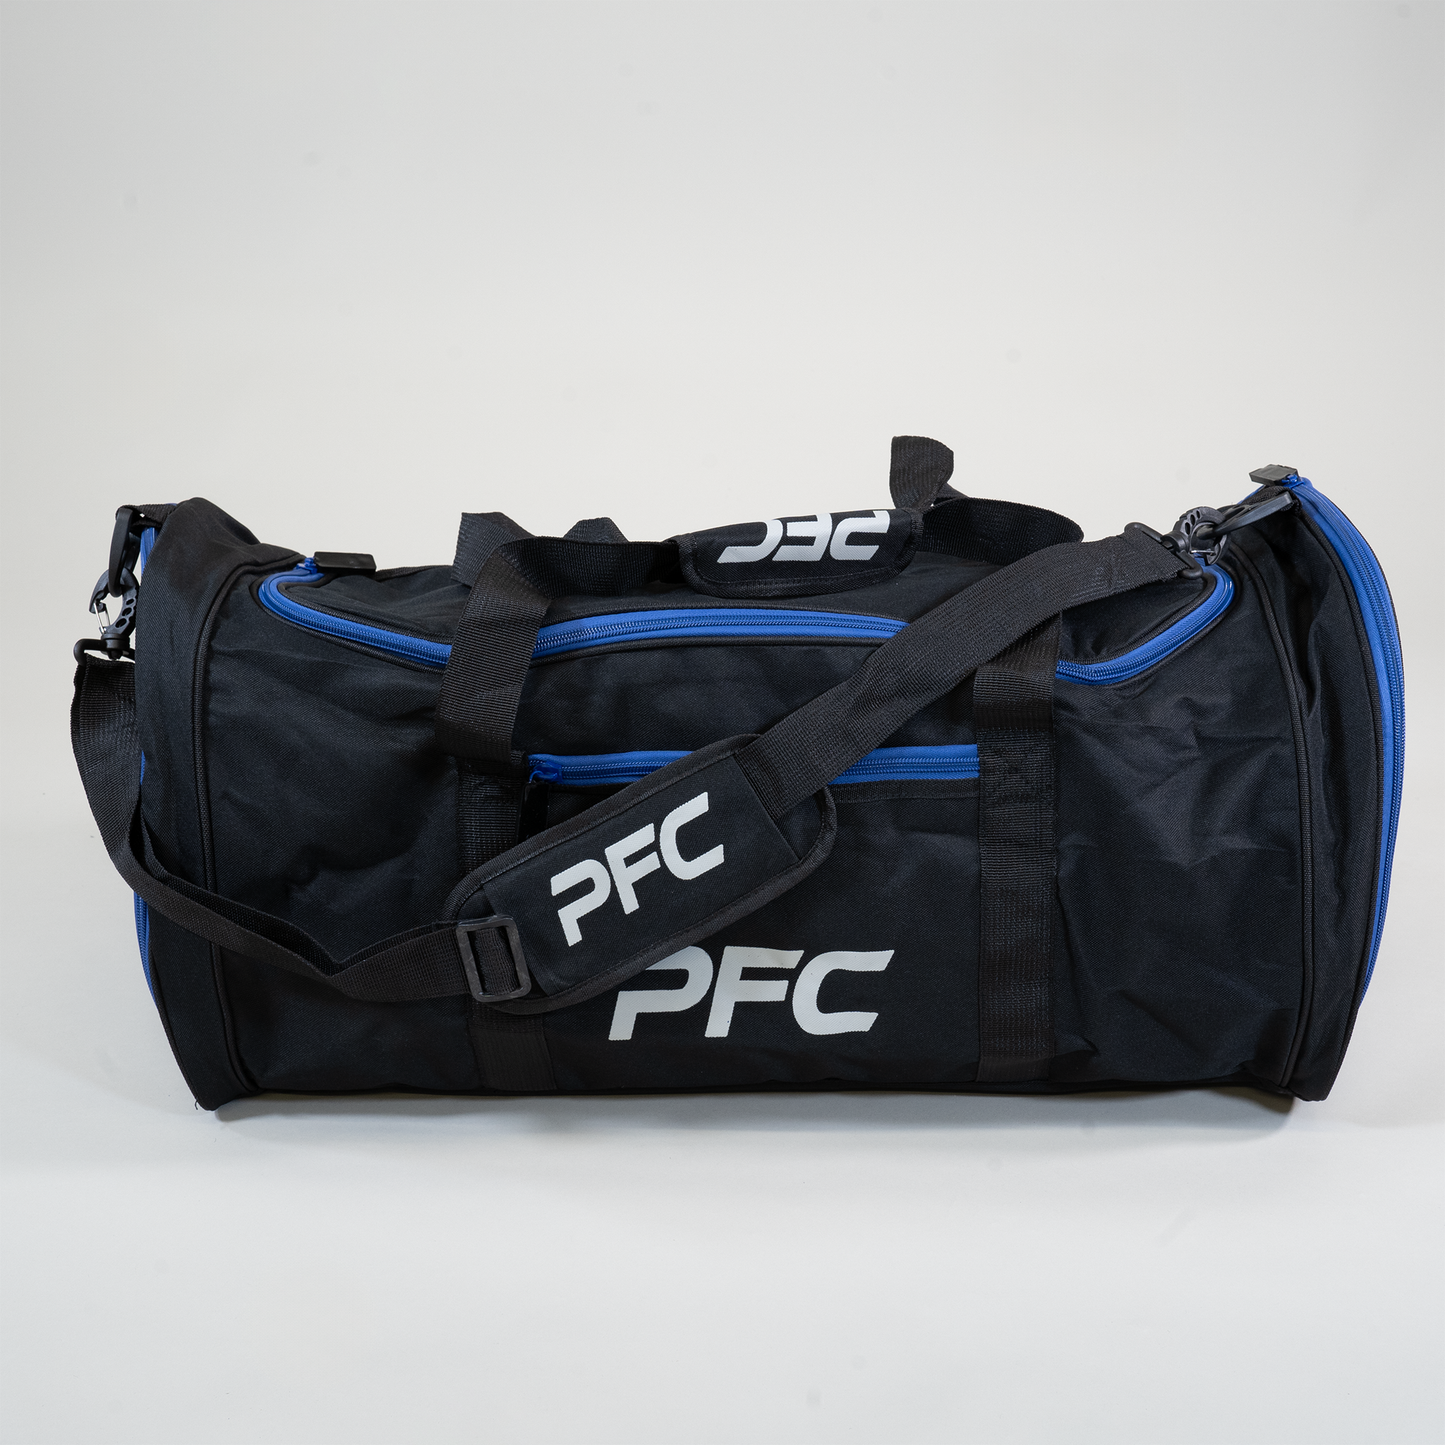 PFC Fighter Bag